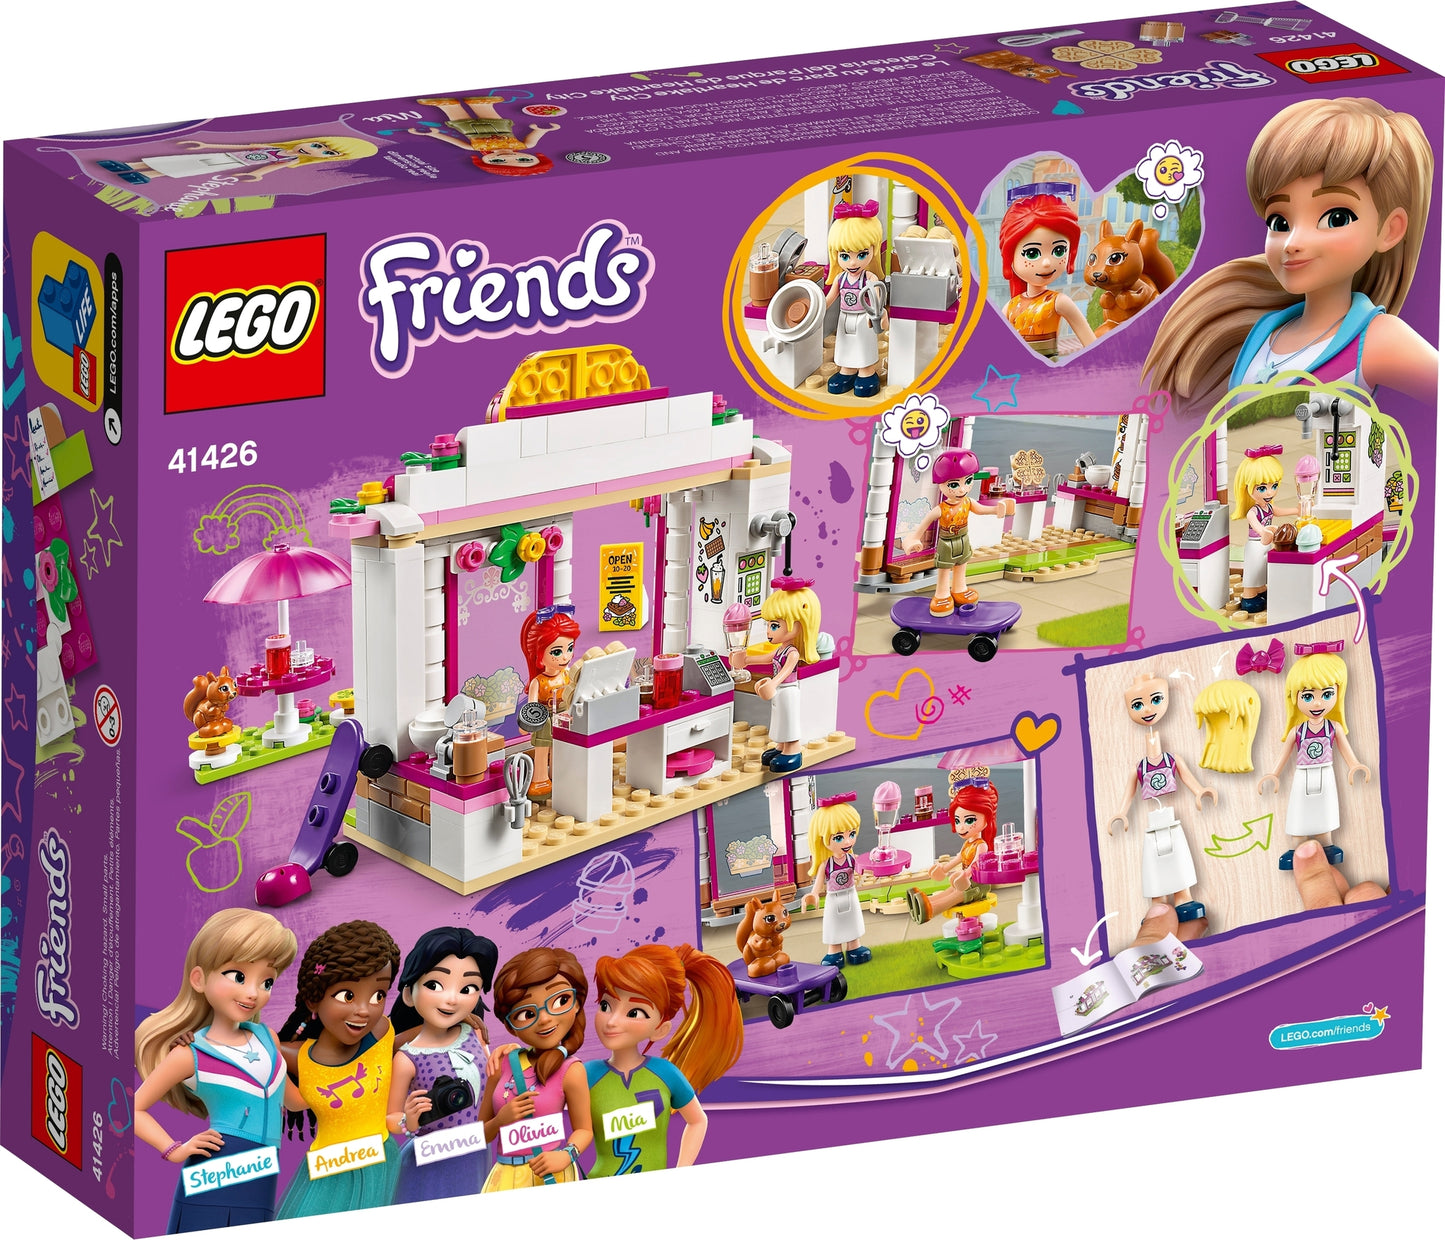 41426 LEGO Friends - Heartlake City Park Café